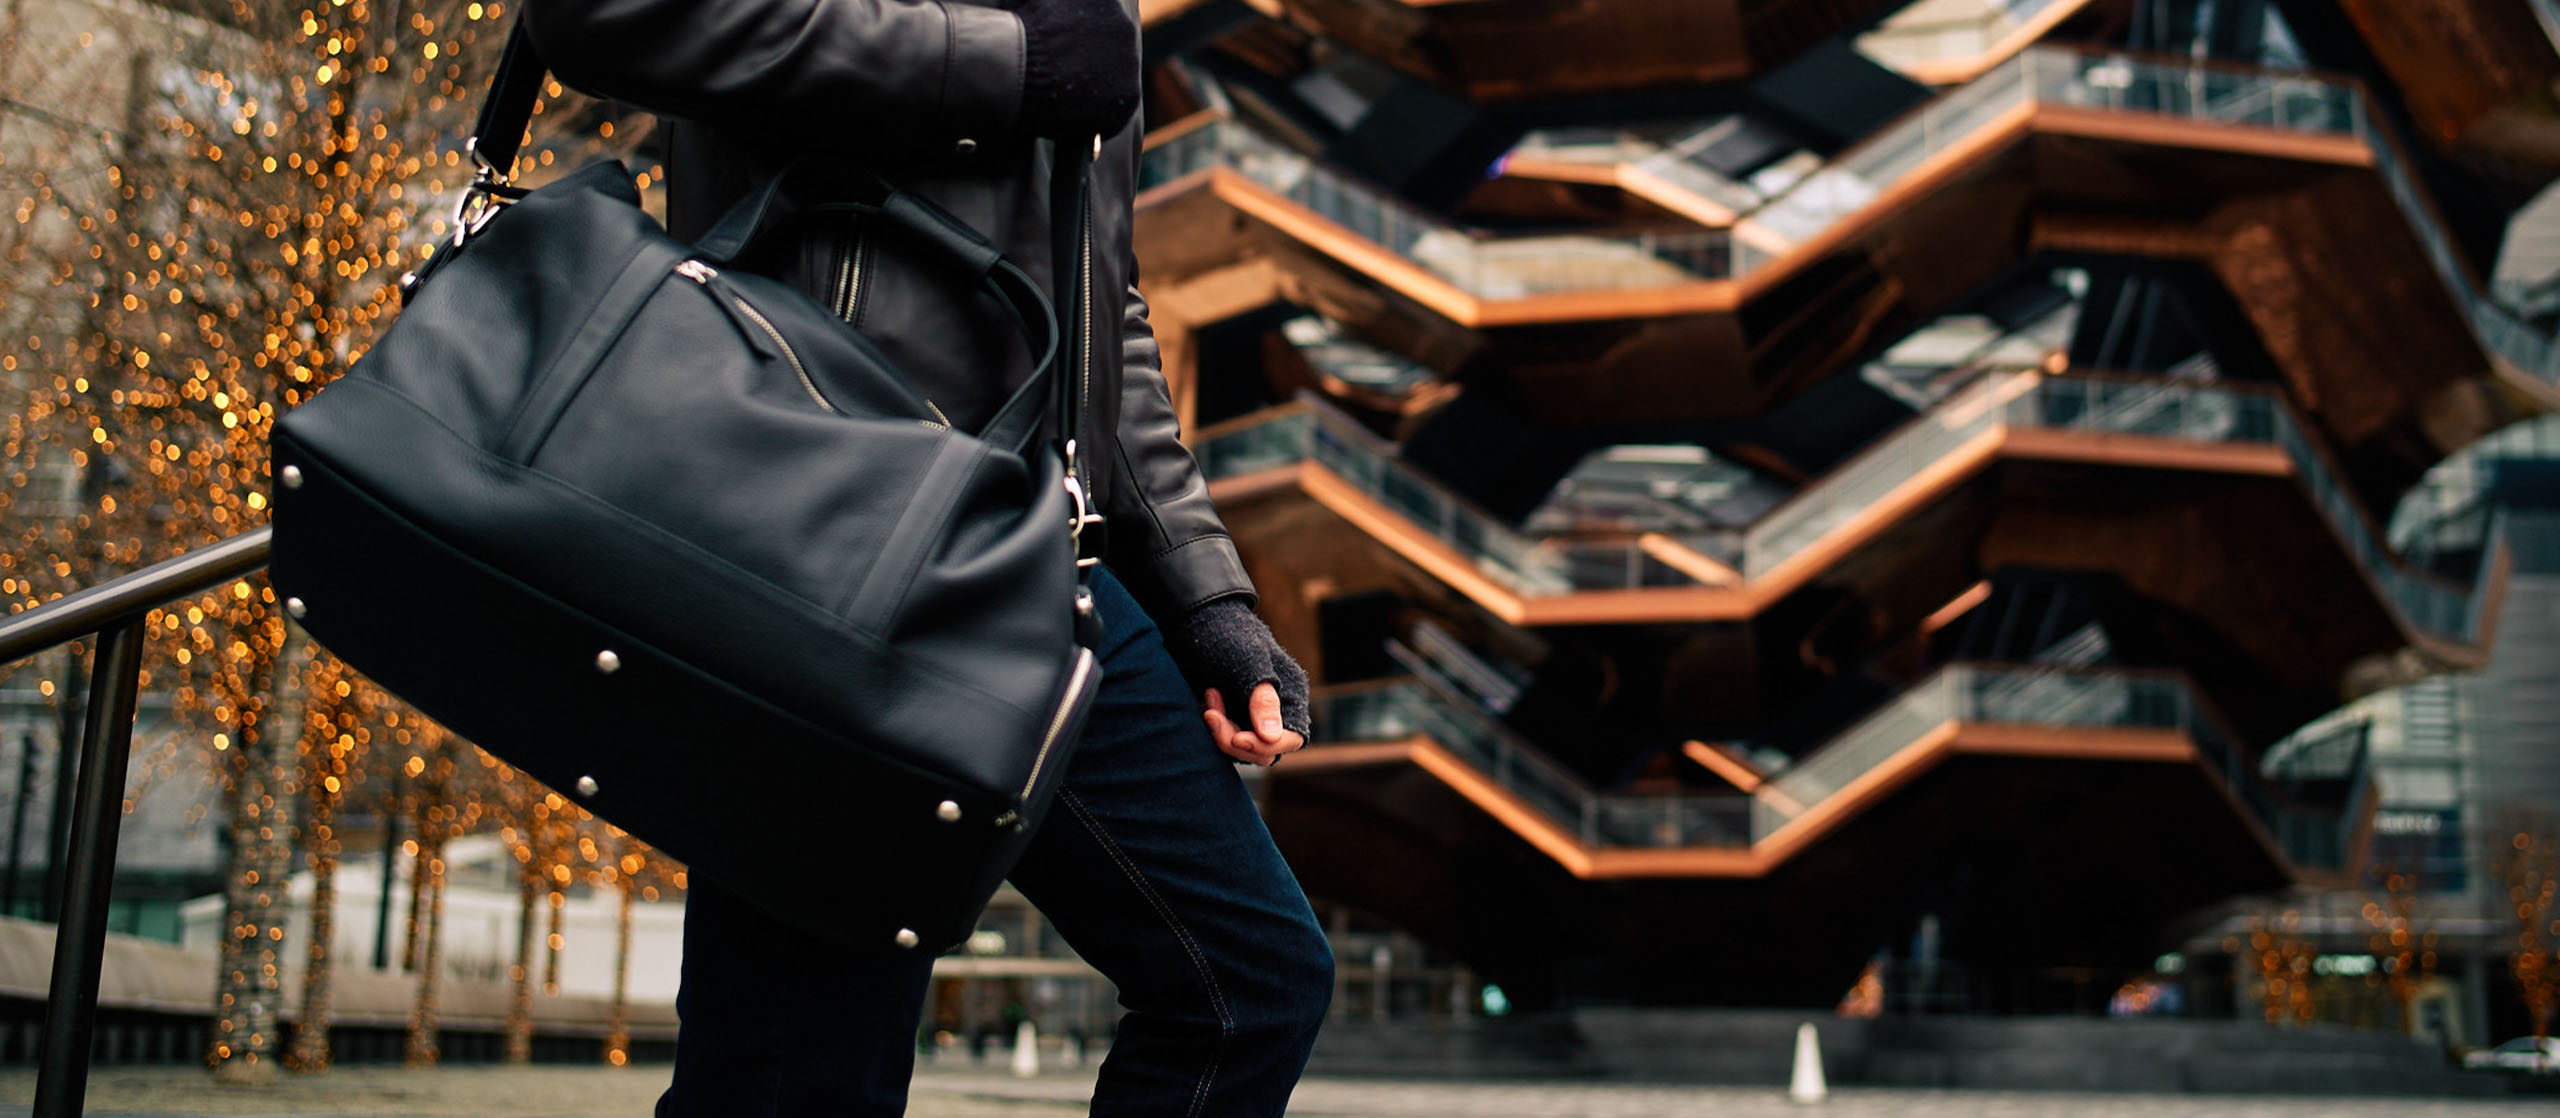 Mann steht mit einer Oberwerth Reisetasche aus Leder die ihm über die Schulter hängt vor einem Gebäude